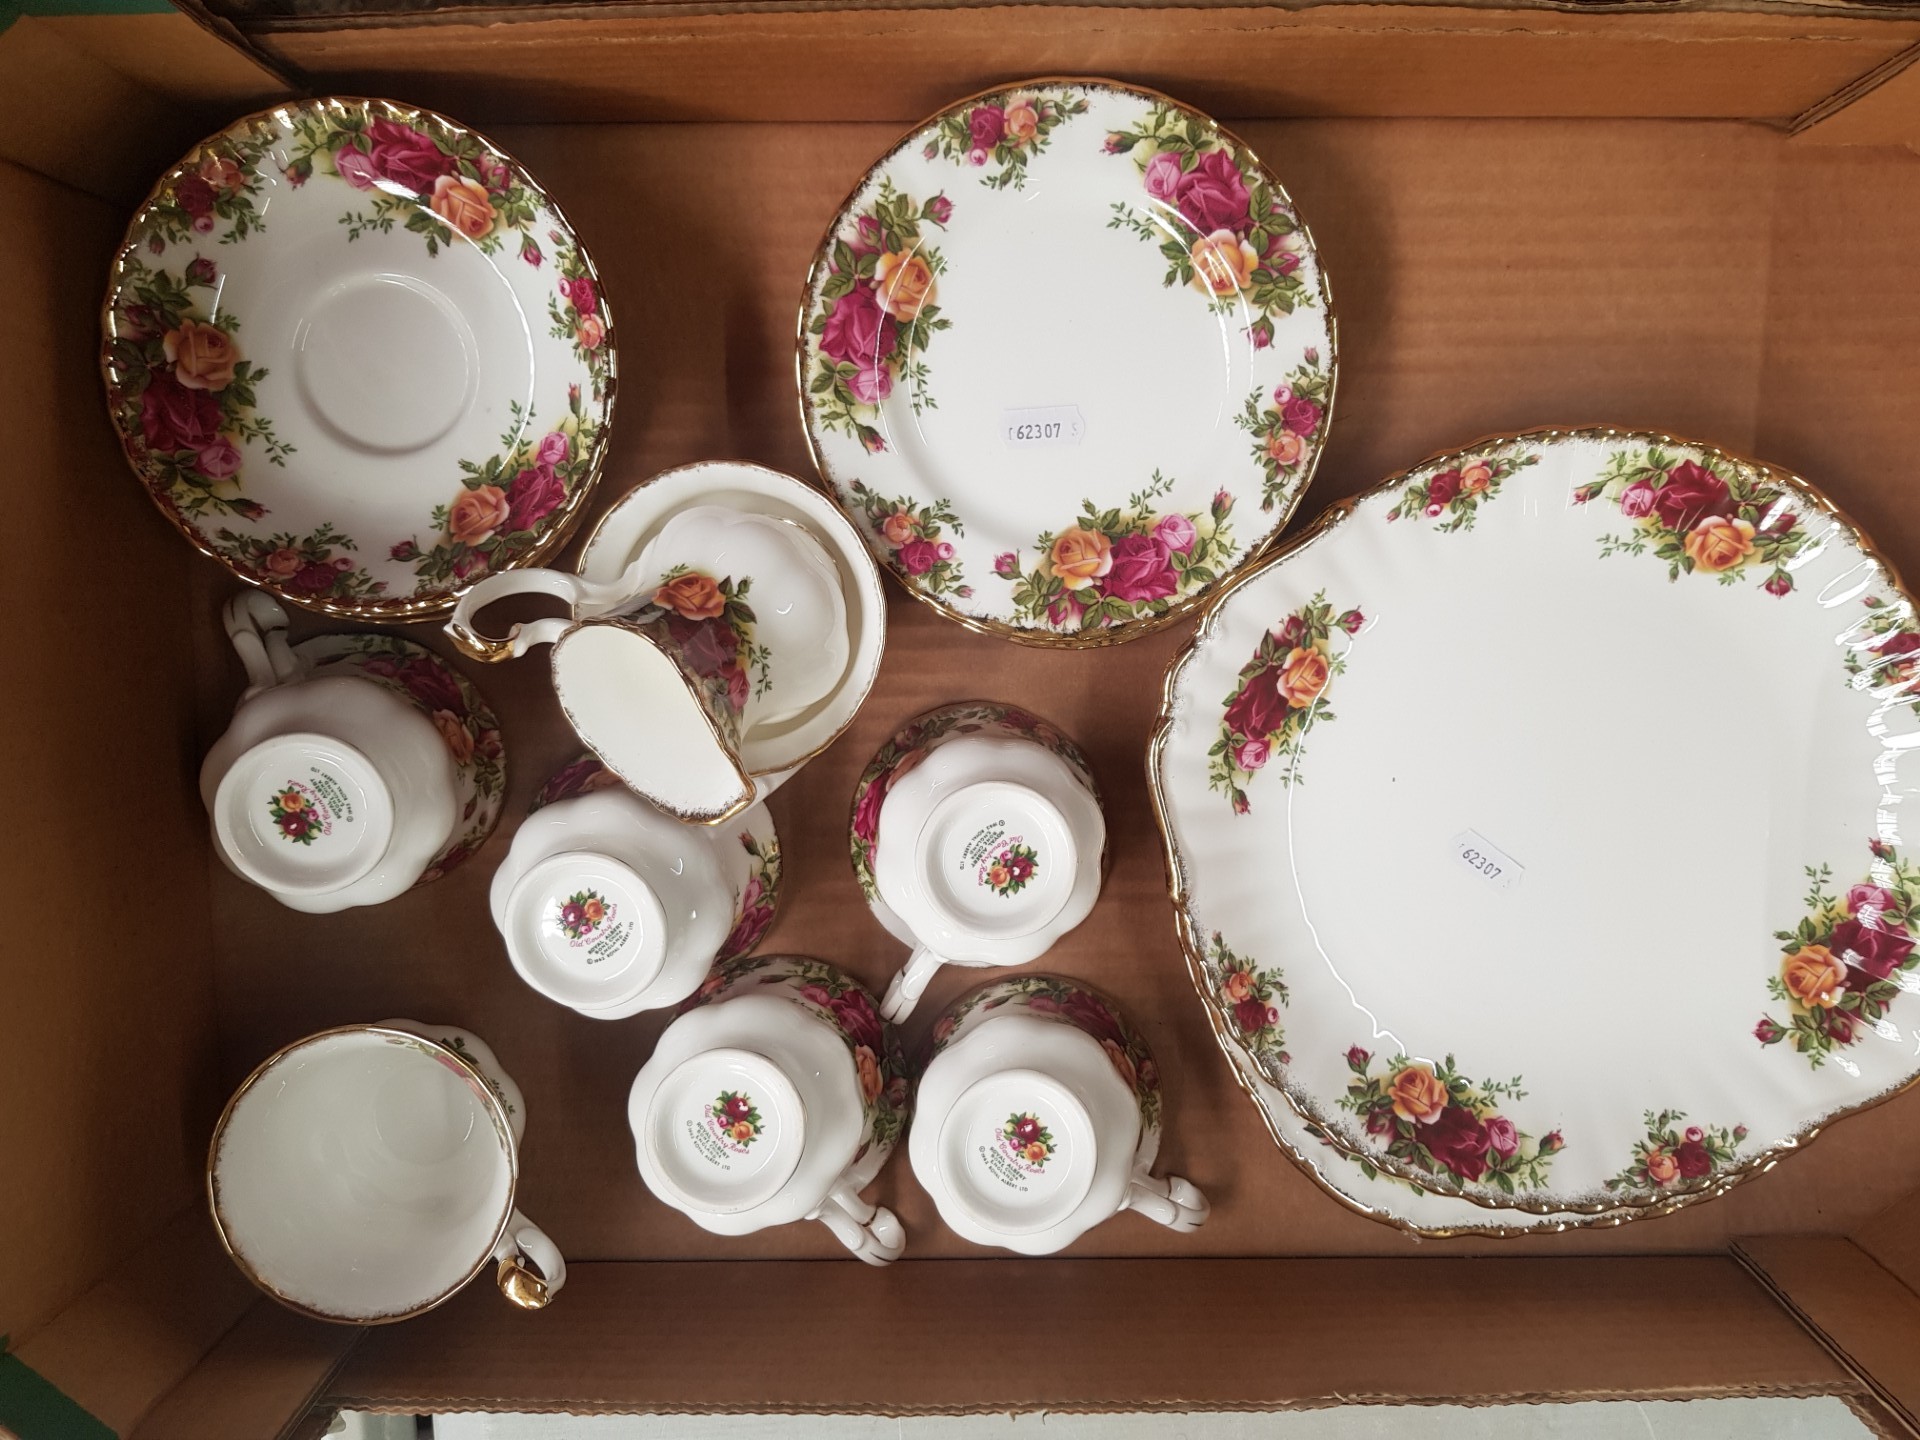 Royal Albert Old Country Roses tea set consisting of 2 cake plates, small milk jug and small sugar